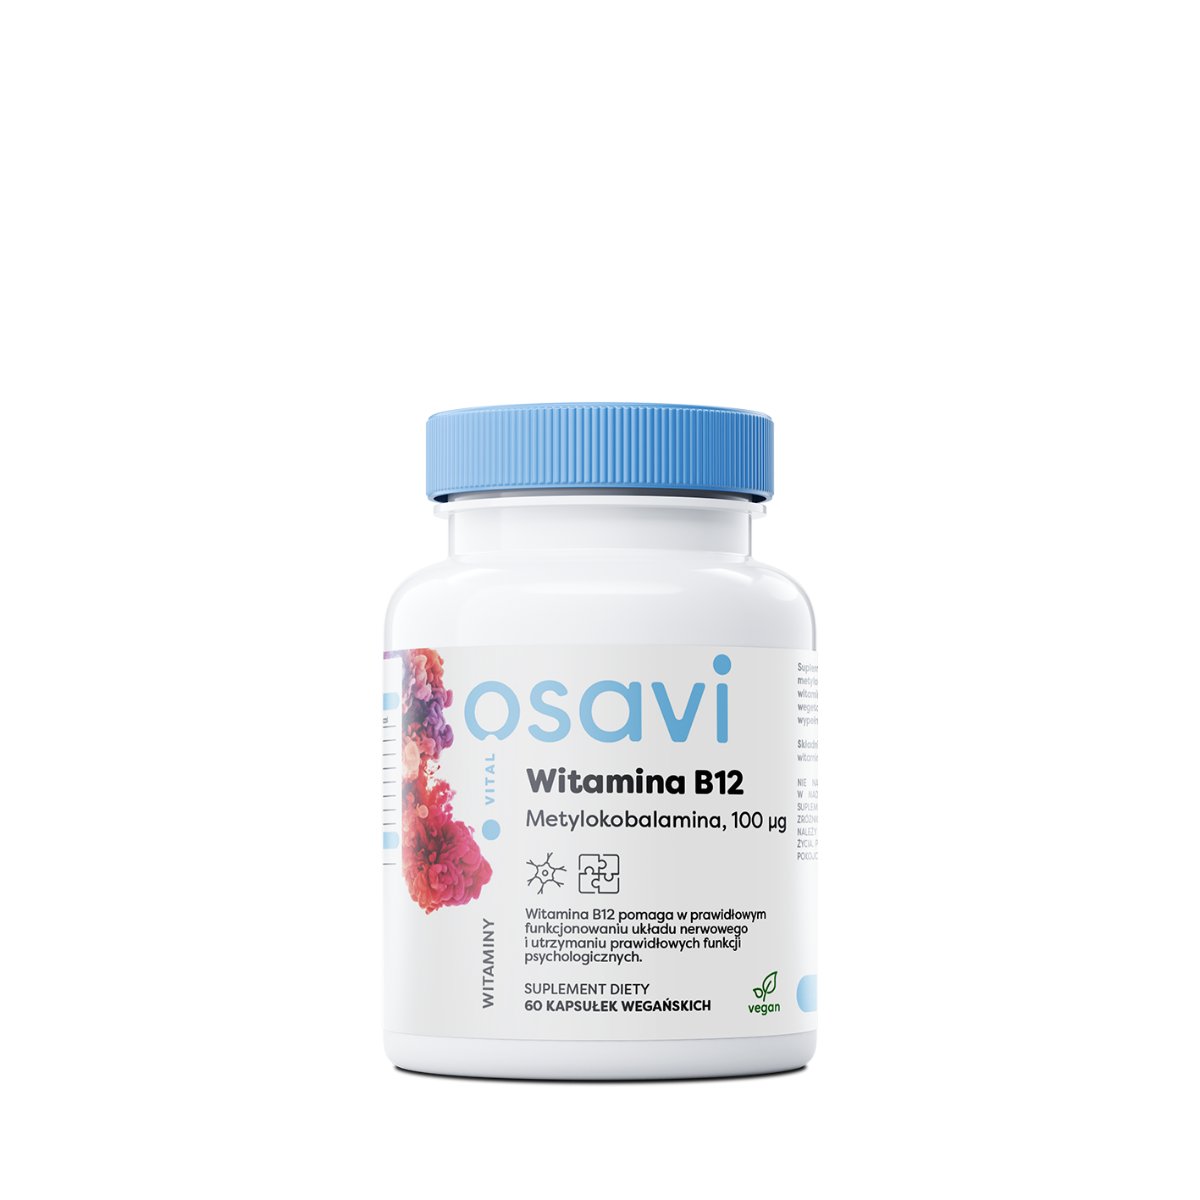 OSAVI Witamina B12 Metylokobalamina 100mcg (Układ nerwowy, Odporność) 60 Kapsułek wegańskich